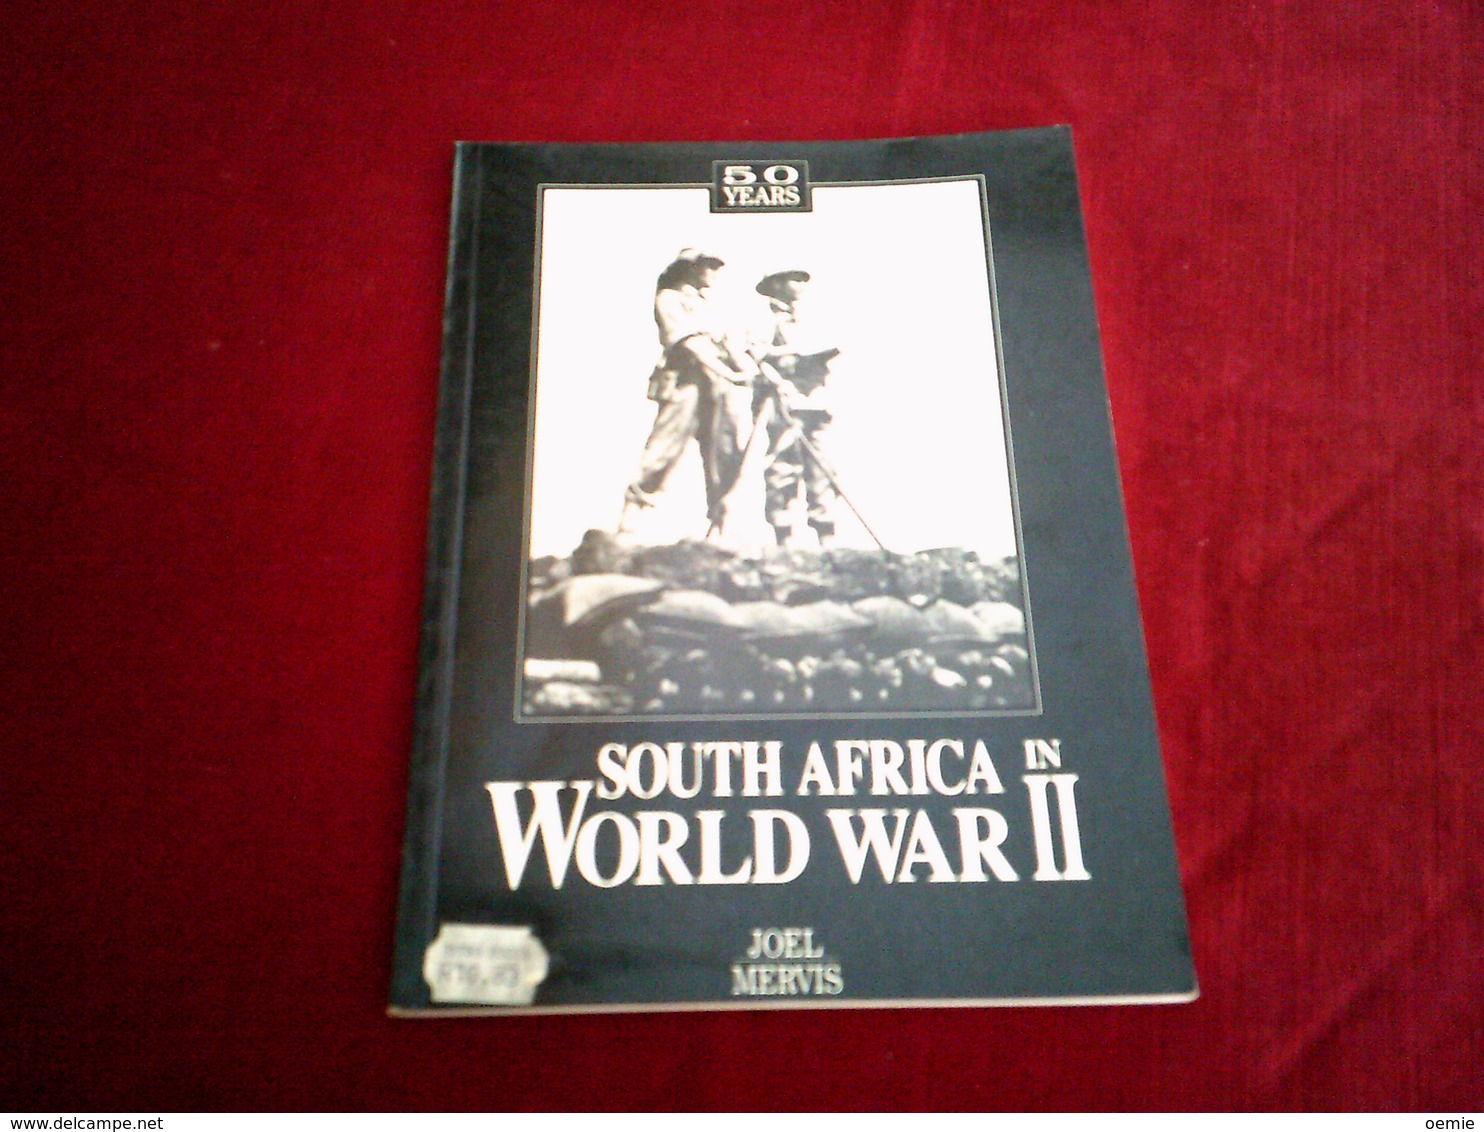 50 YEARS SOUTH AFRICA IN WORLD WAR II  PAR JOEL MERVIS - US-Force